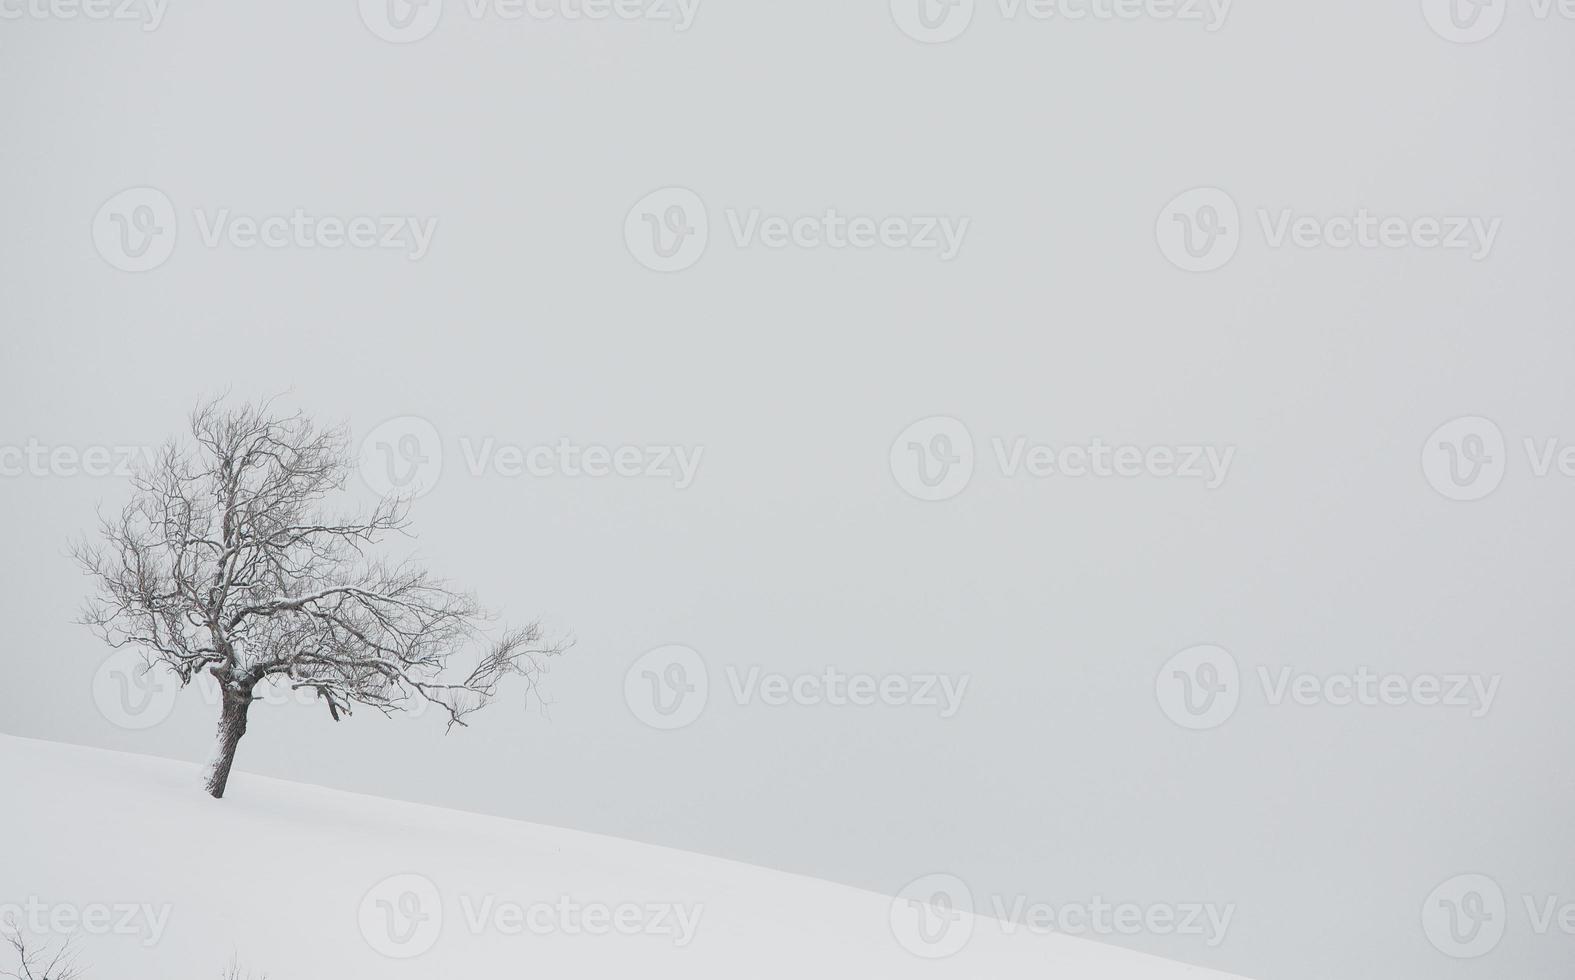 ein reichlicher schneefall in den rumänischen karpaten im dorf sirnea, brasov. echter Winter mit Schnee auf dem Land foto